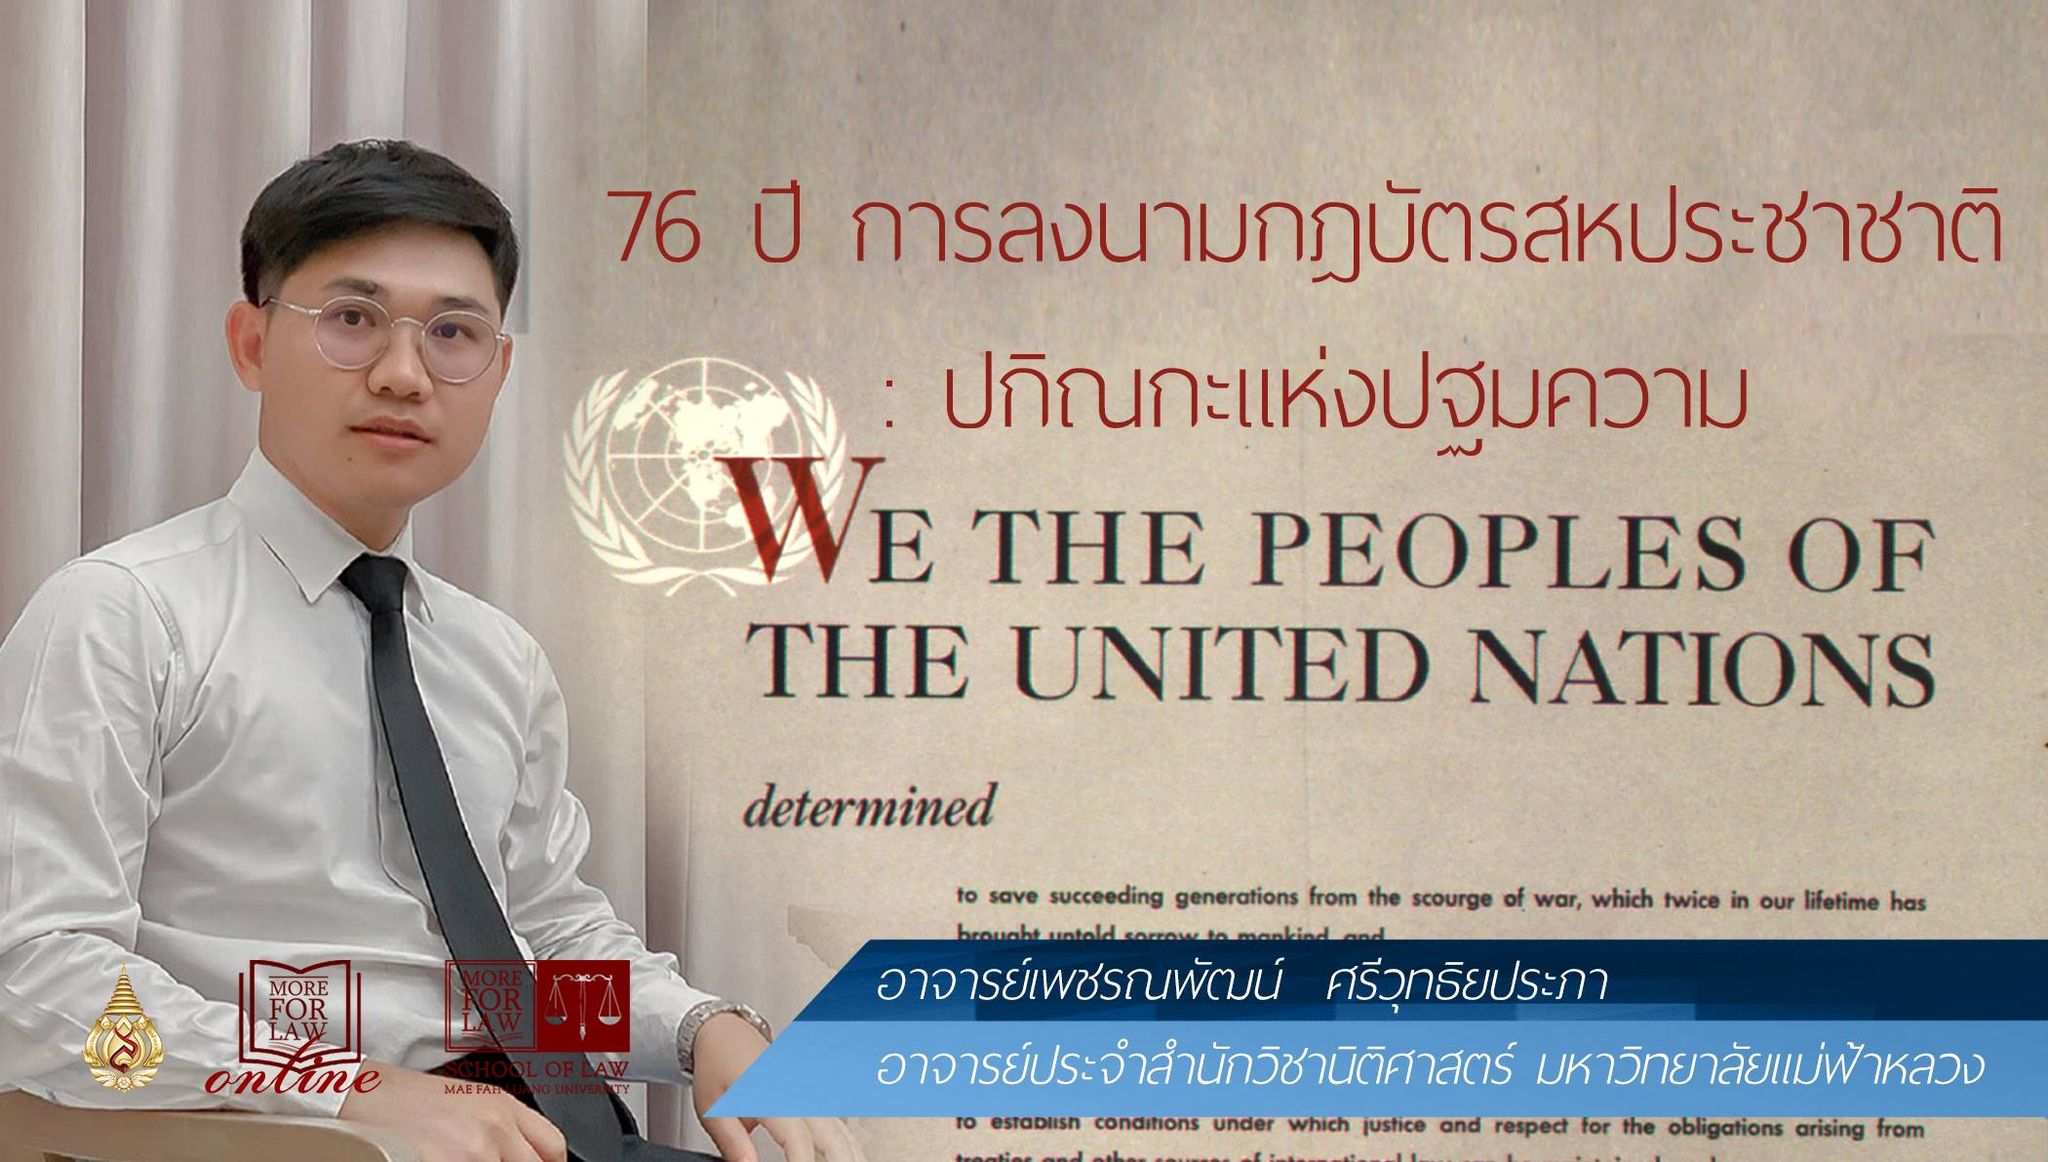 รำลึก 76 ปีแห่งการลงนามกฎบัตรสหประชาชาติ :  ปกิณกะแห่งปฐมความ “WE THE PEOPLES OF THE UNITED NATIONS”